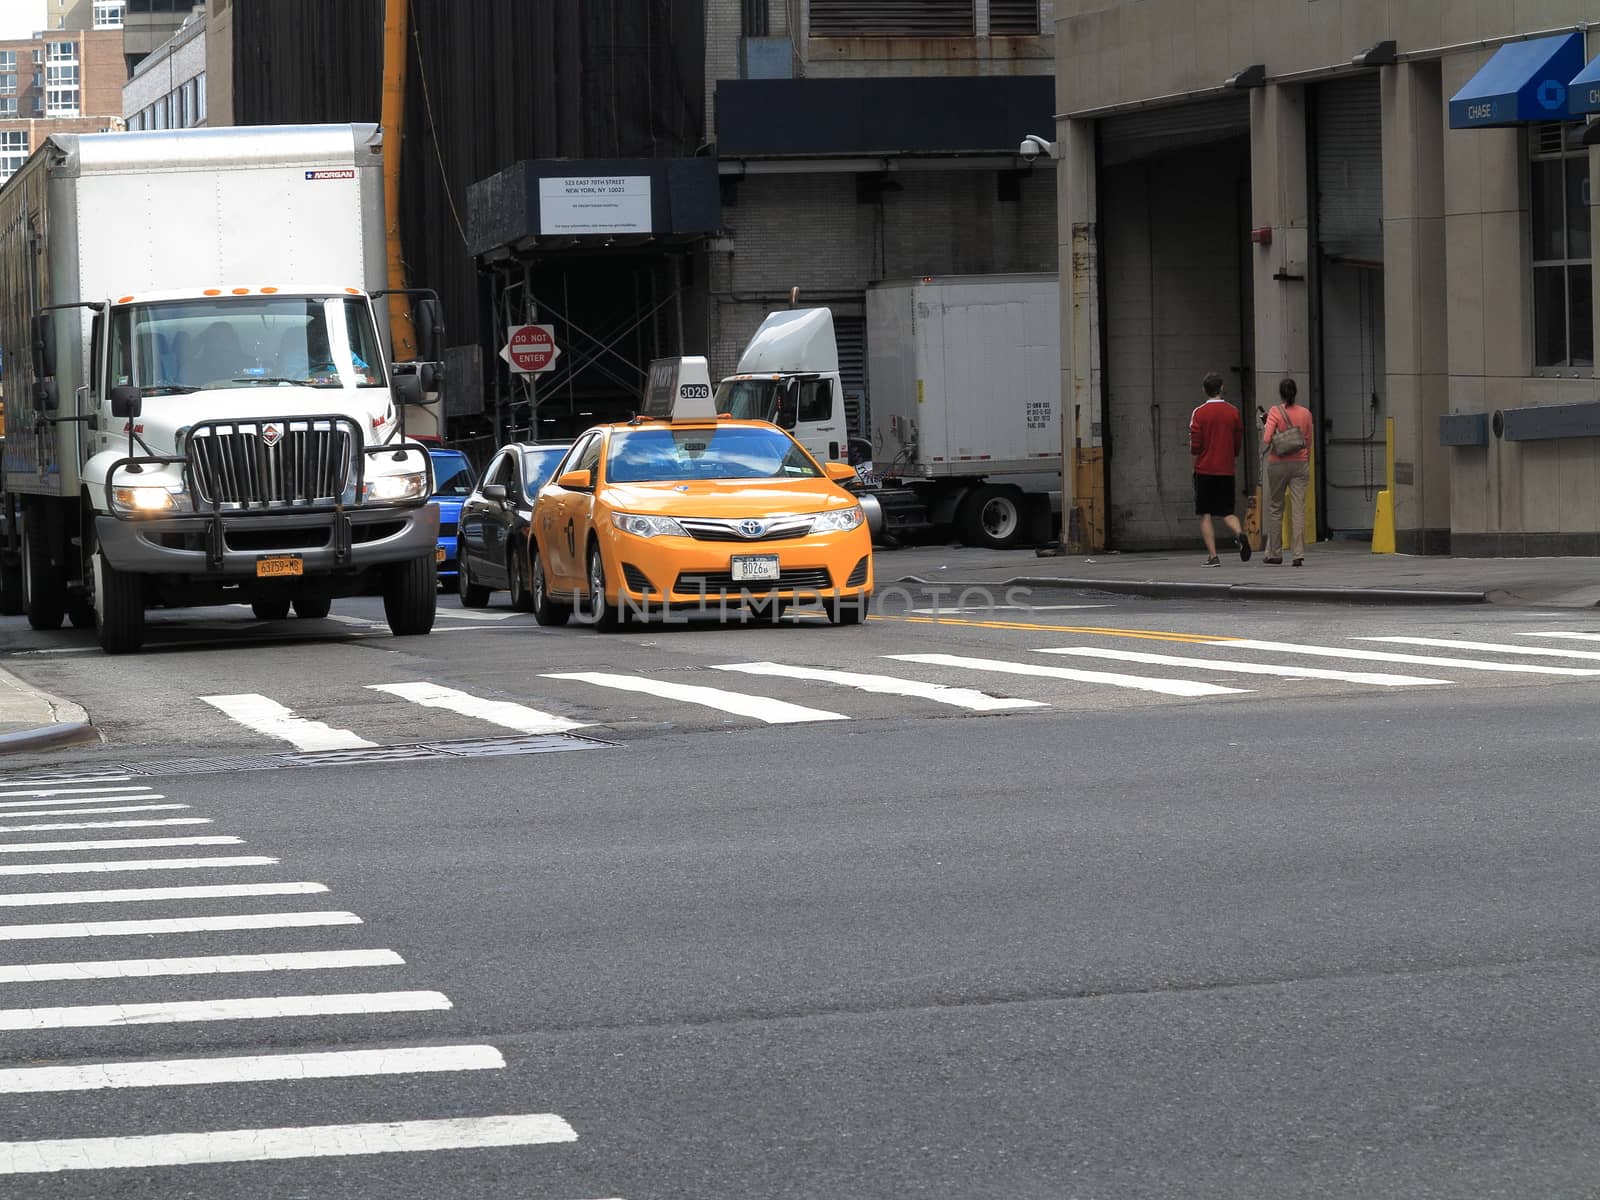 A NYC taxi cab at a crosswalk.